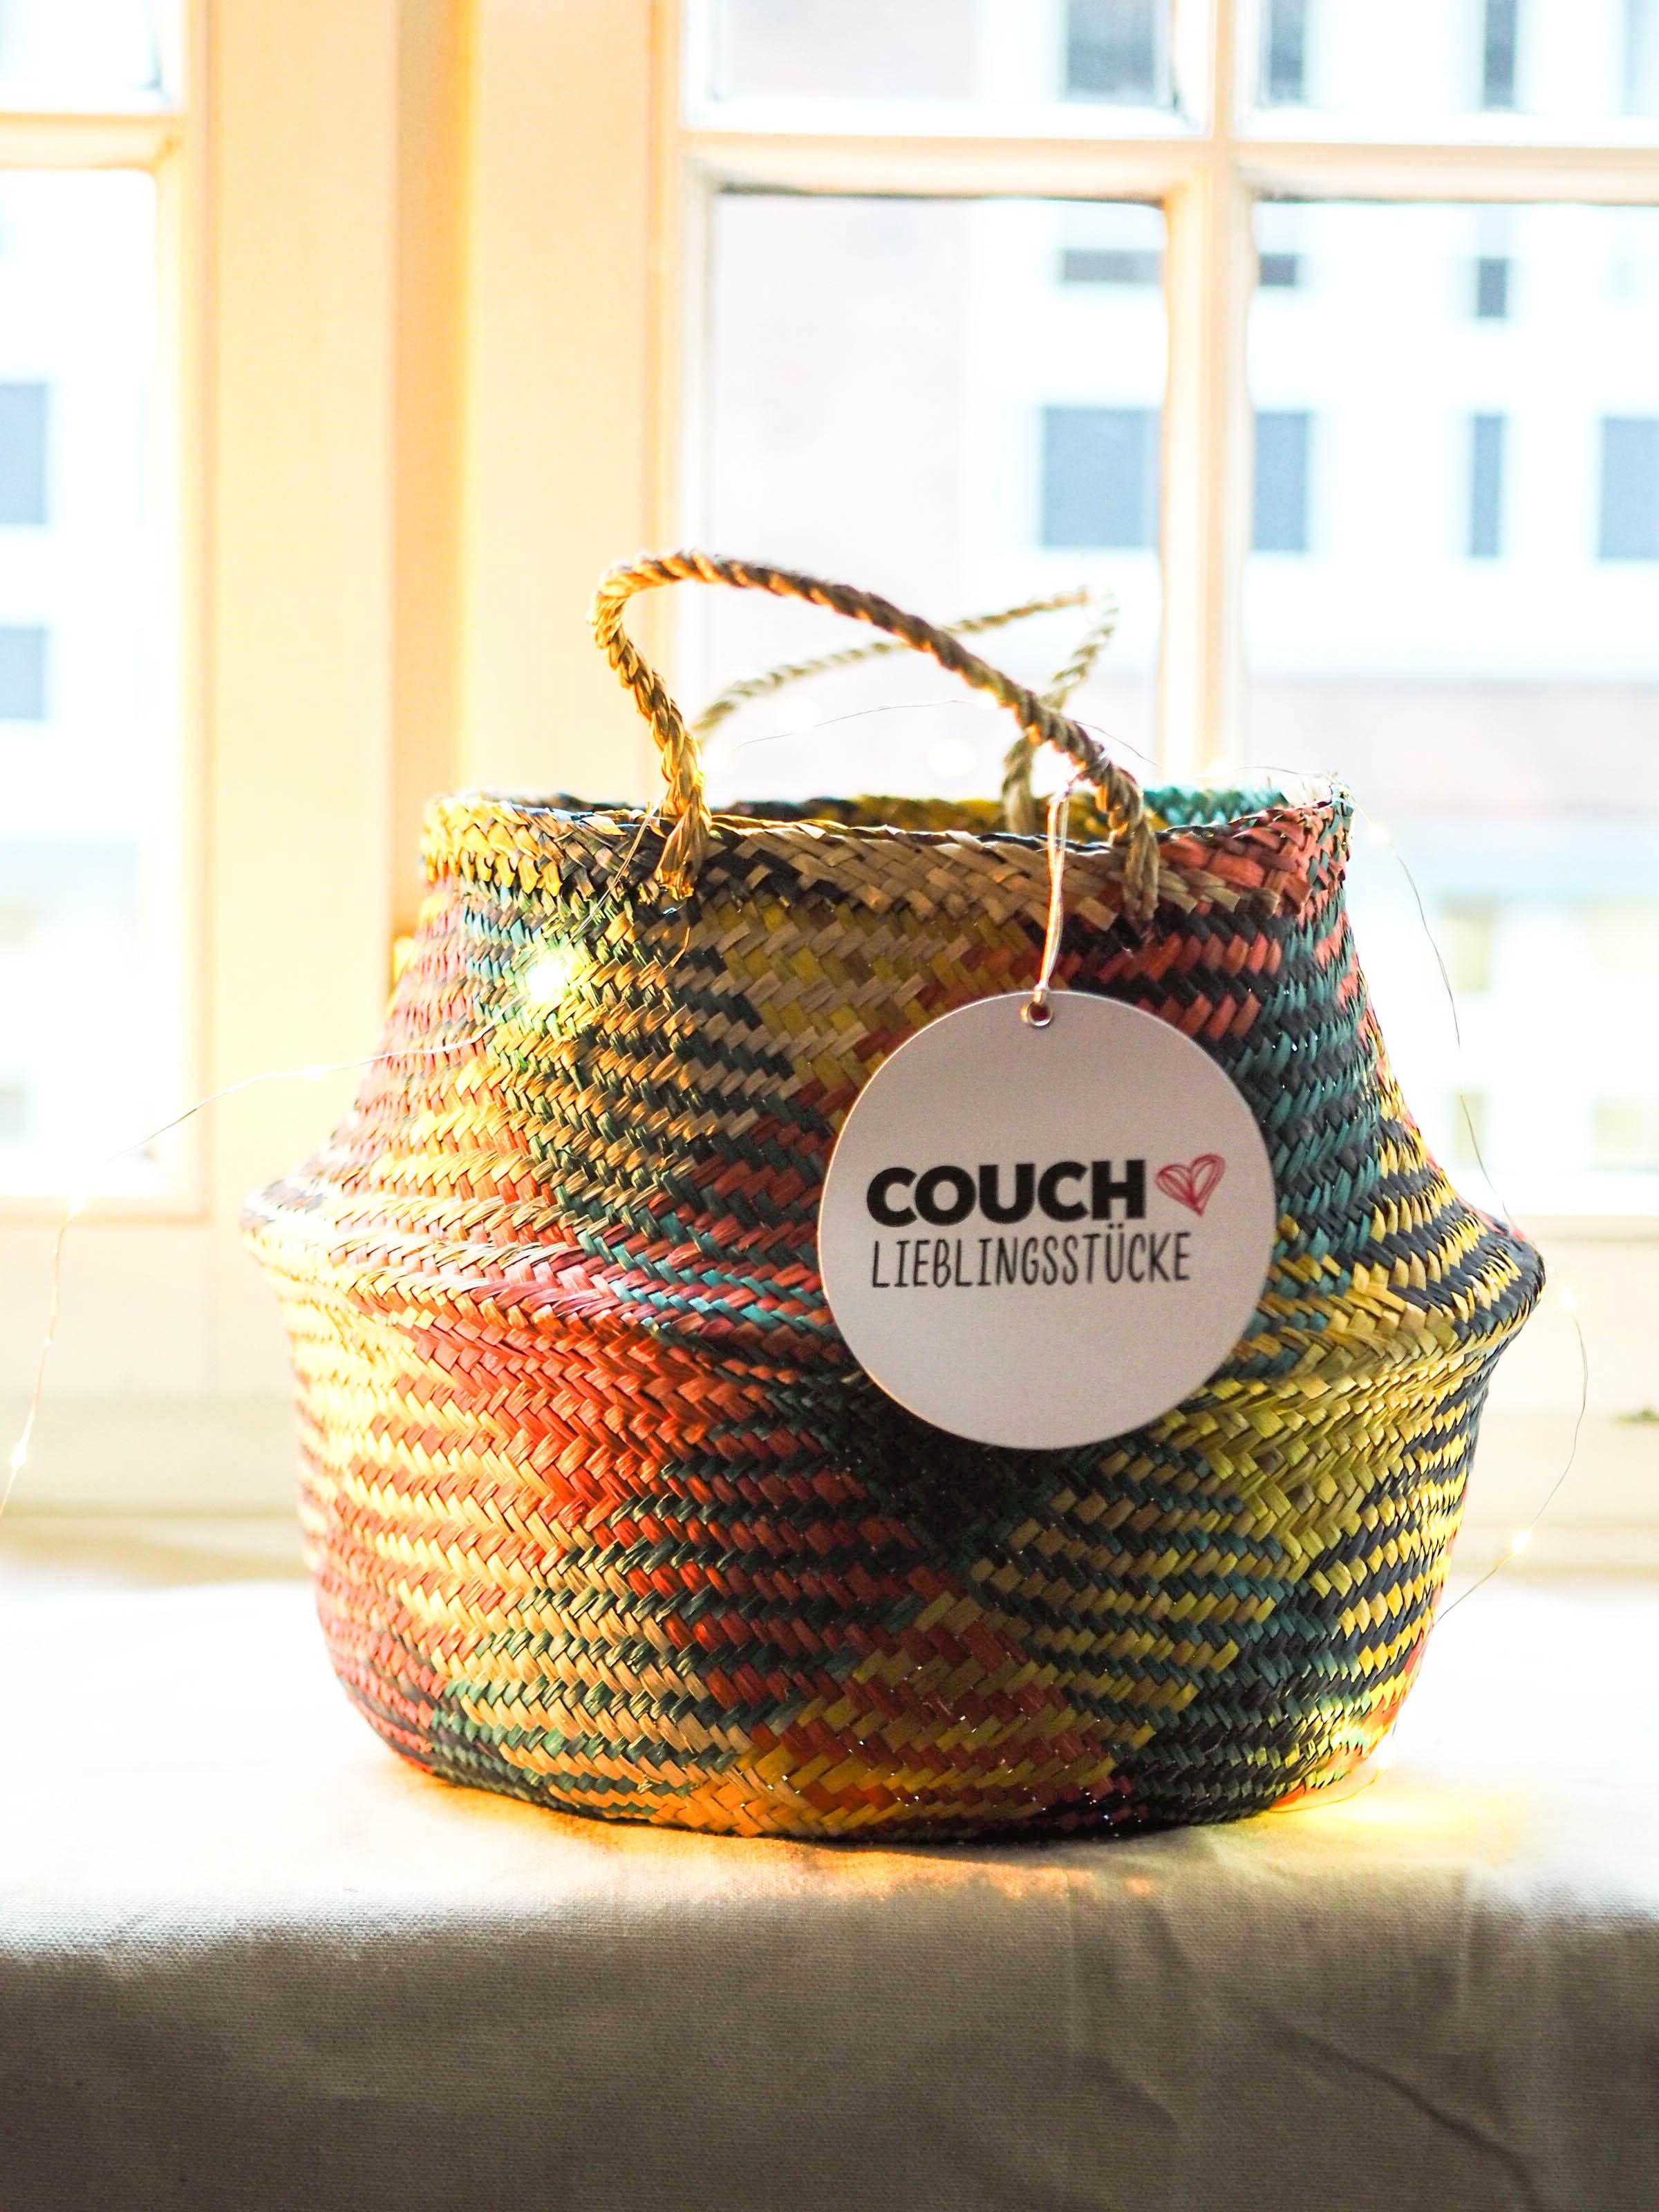 Pflanzenfreund: Wir lieben den bunten Korb aus unserer COUCH Kollektion #geschenkideen #couchlieblingsstücke